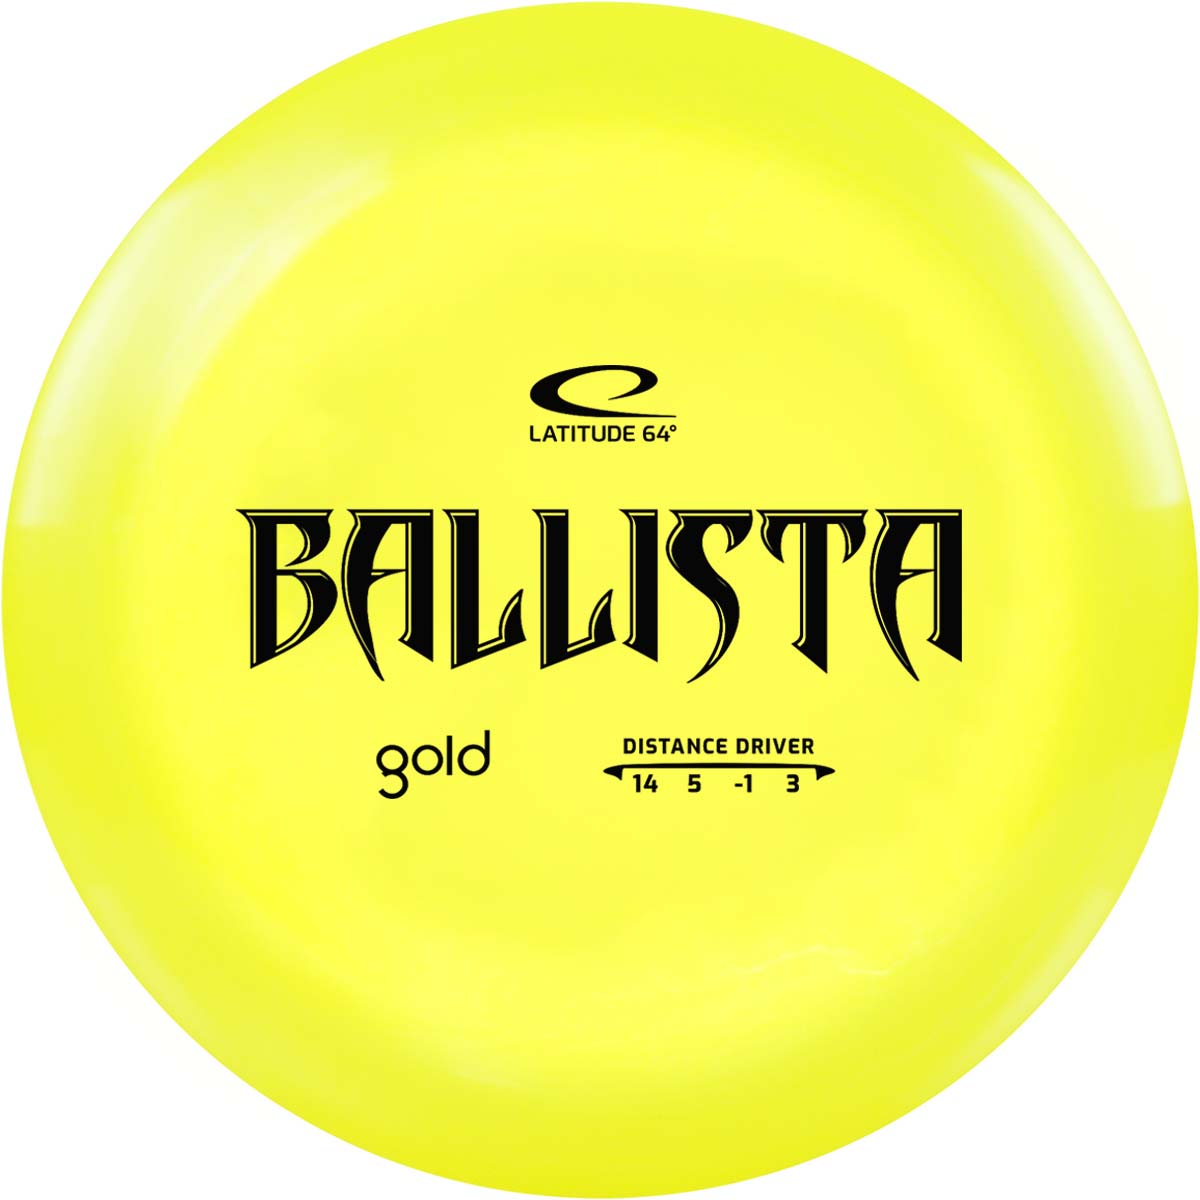 Gold Ballista